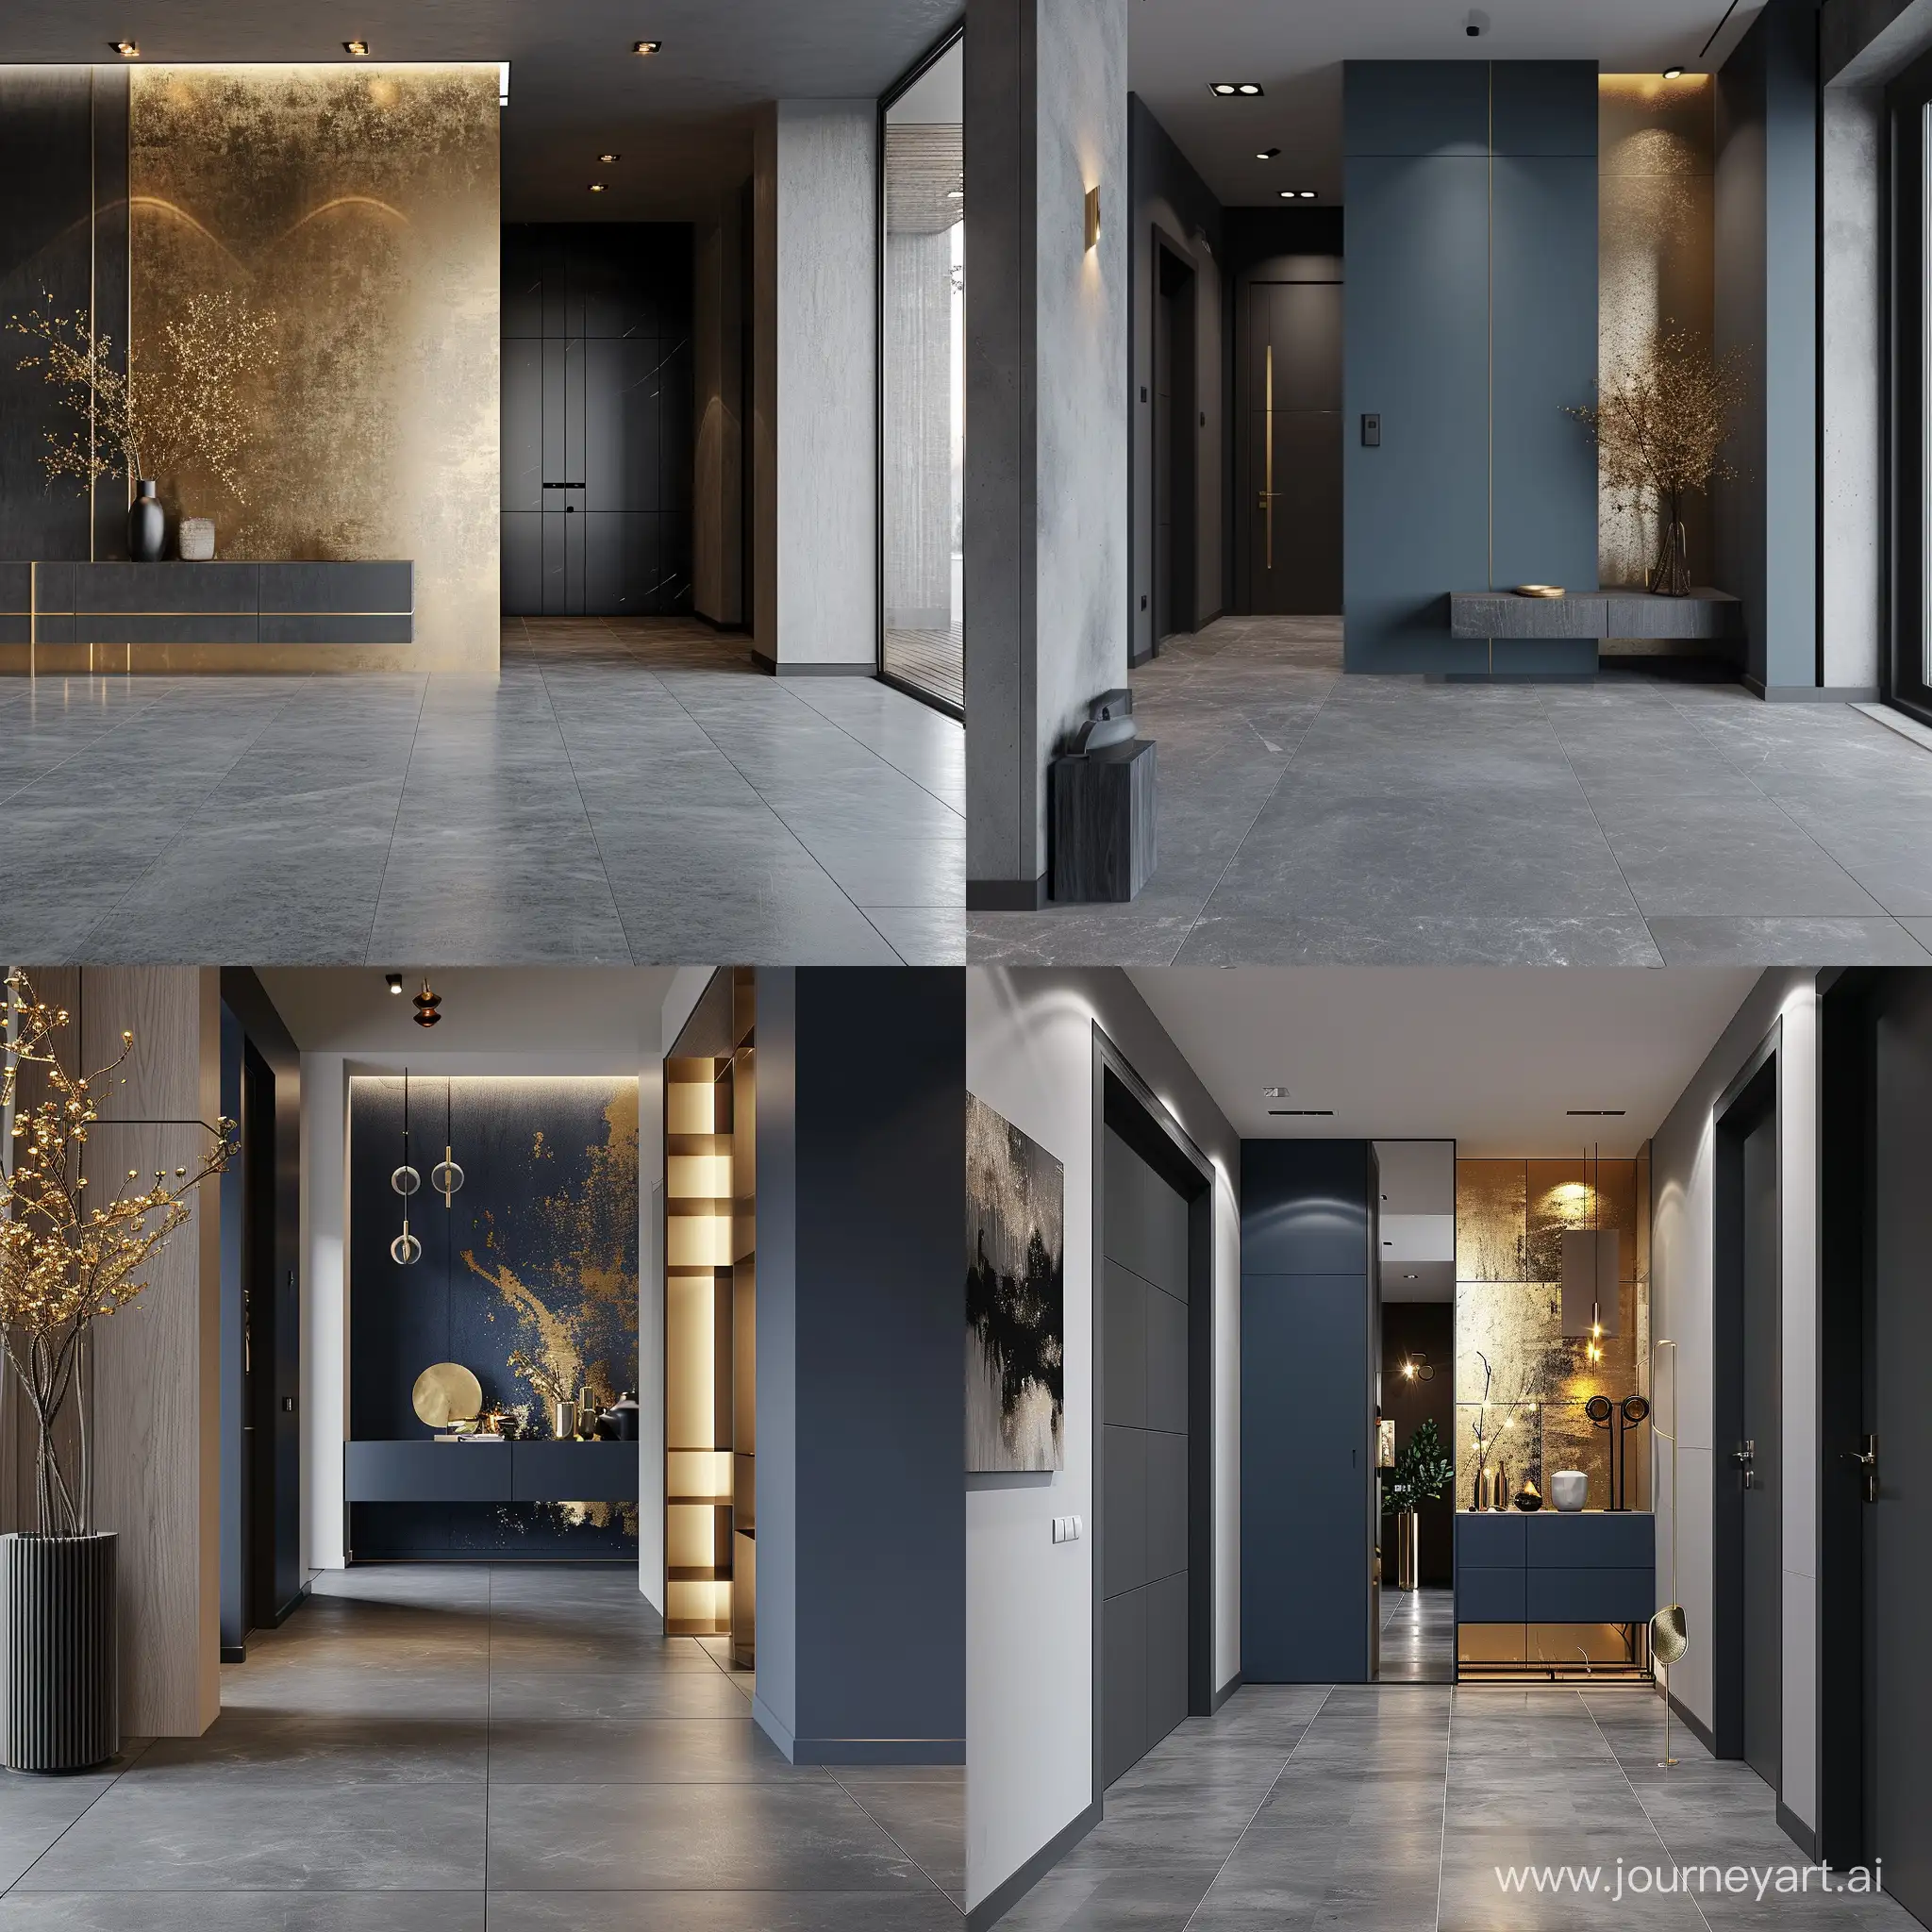 Ingresso appartamento stile moderno pavimento grigio.  colore dominante medium Blue, dettagli oro